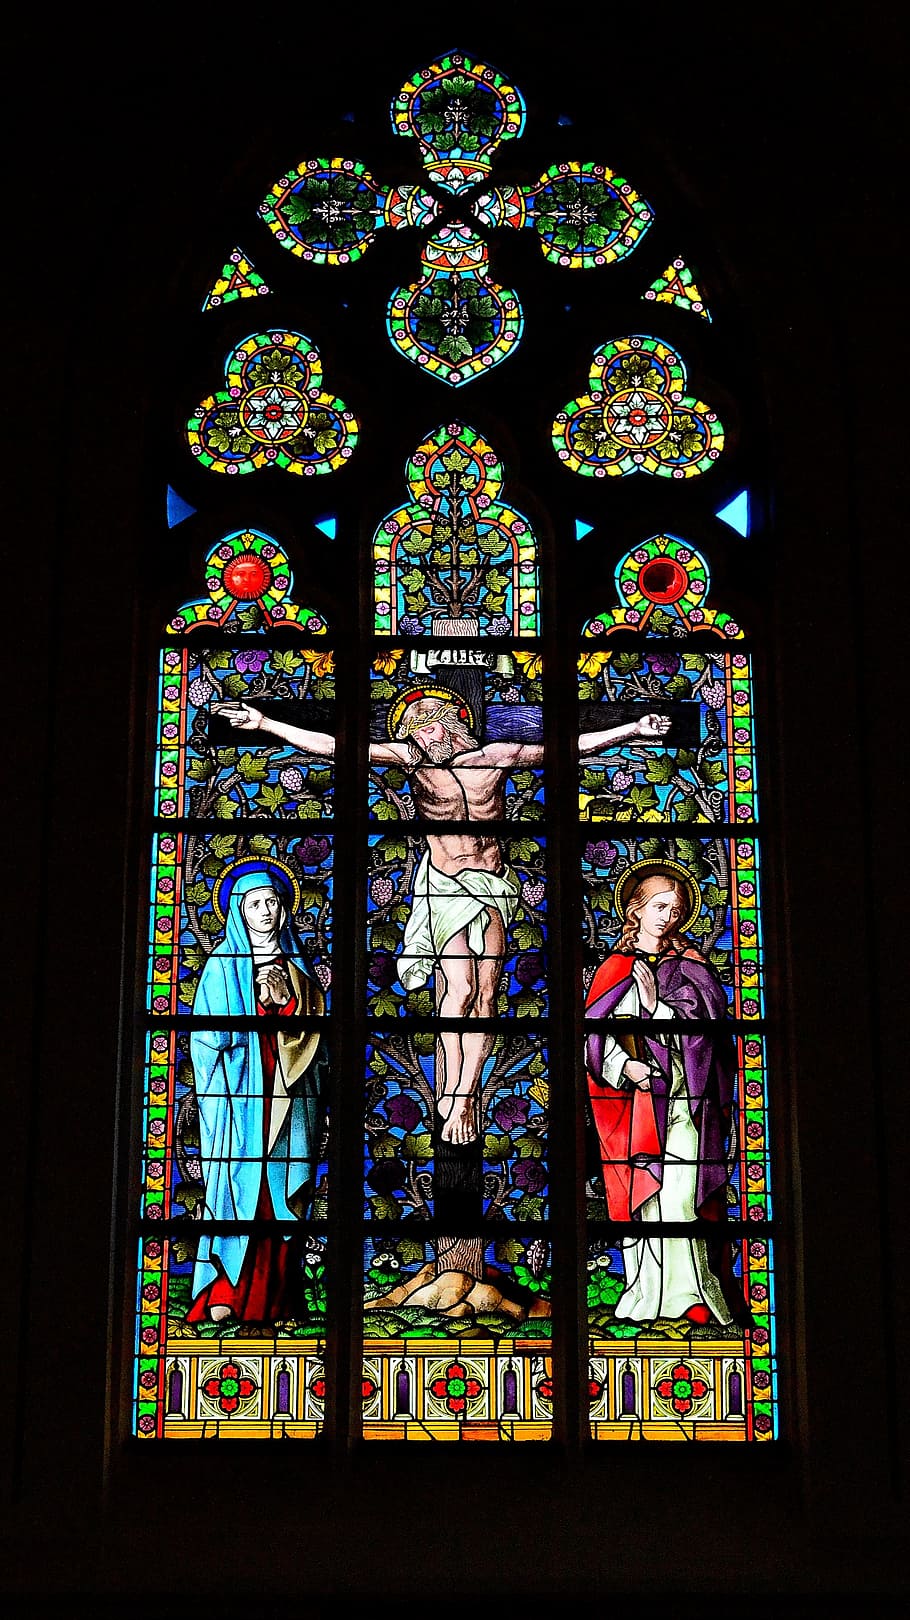 教会の窓, はりつけ, ステンドグラスの窓, 信仰, 教会, キリスト教, インリ, イエス, 聖書, 人間の表象